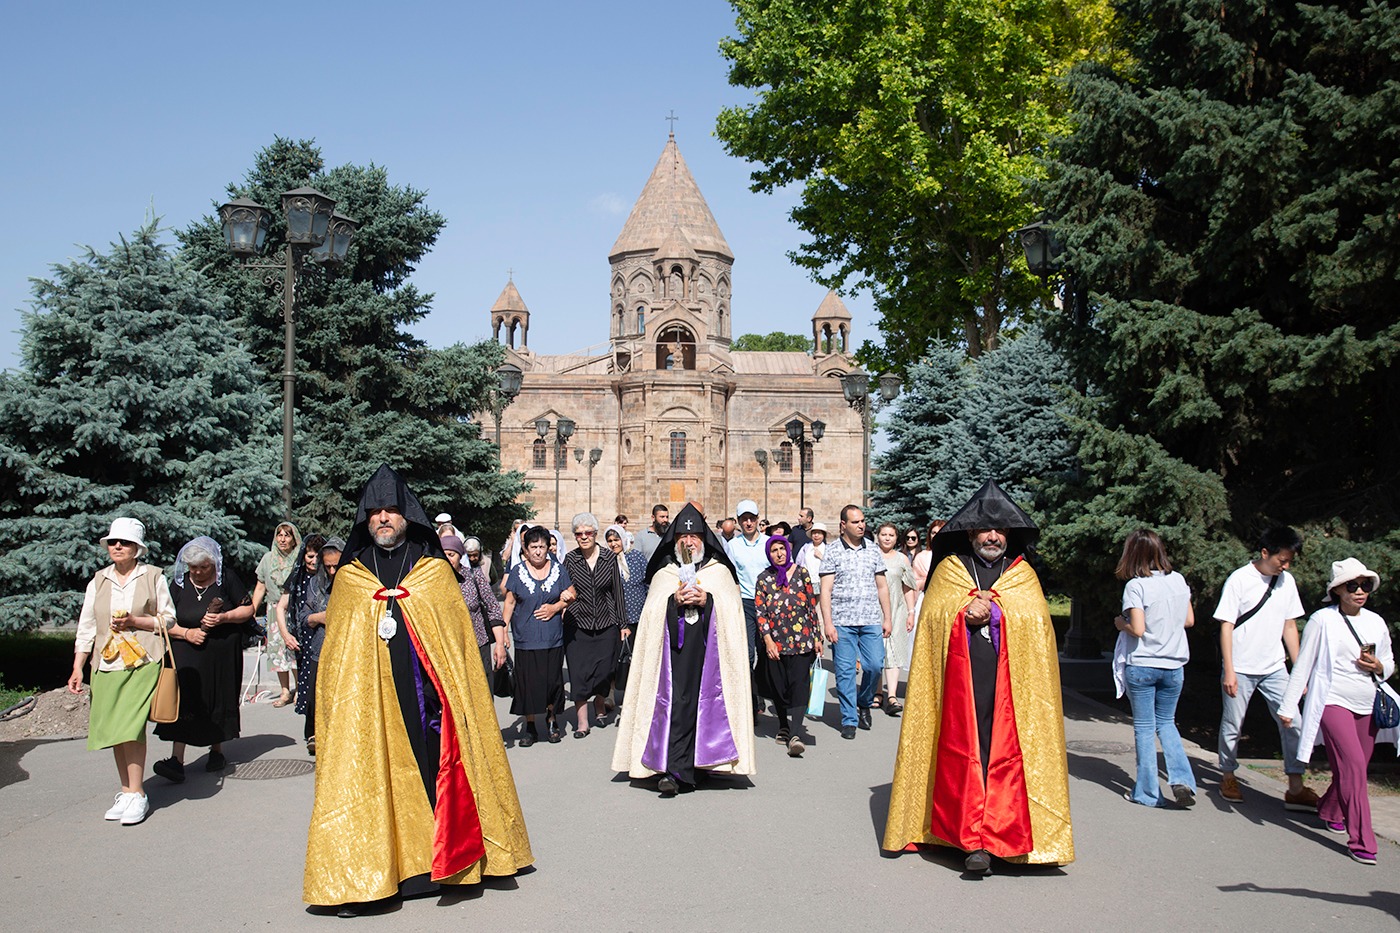 Հայաստանյայց Առաքելական Սուրբ Եկեղեցին տոնախմբել է Սուրբ Հռիփսիմյանց կույսերի հիշատակը